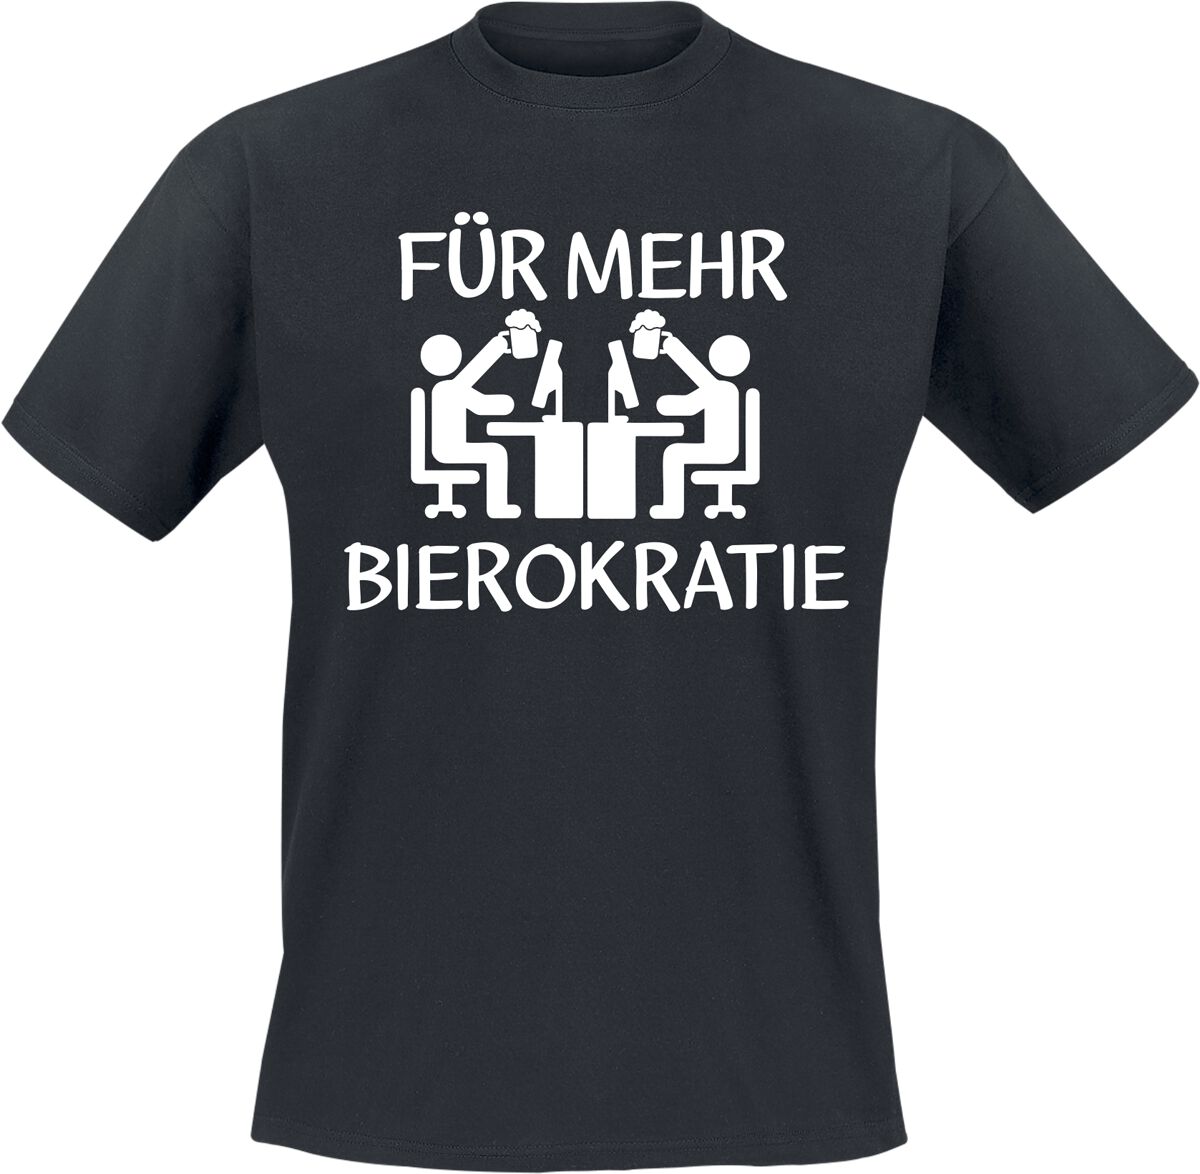 Alkohol & Party T-Shirt - Für mehr Bierokratie - M bis 3XL - für Männer - Größe 3XL - schwarz